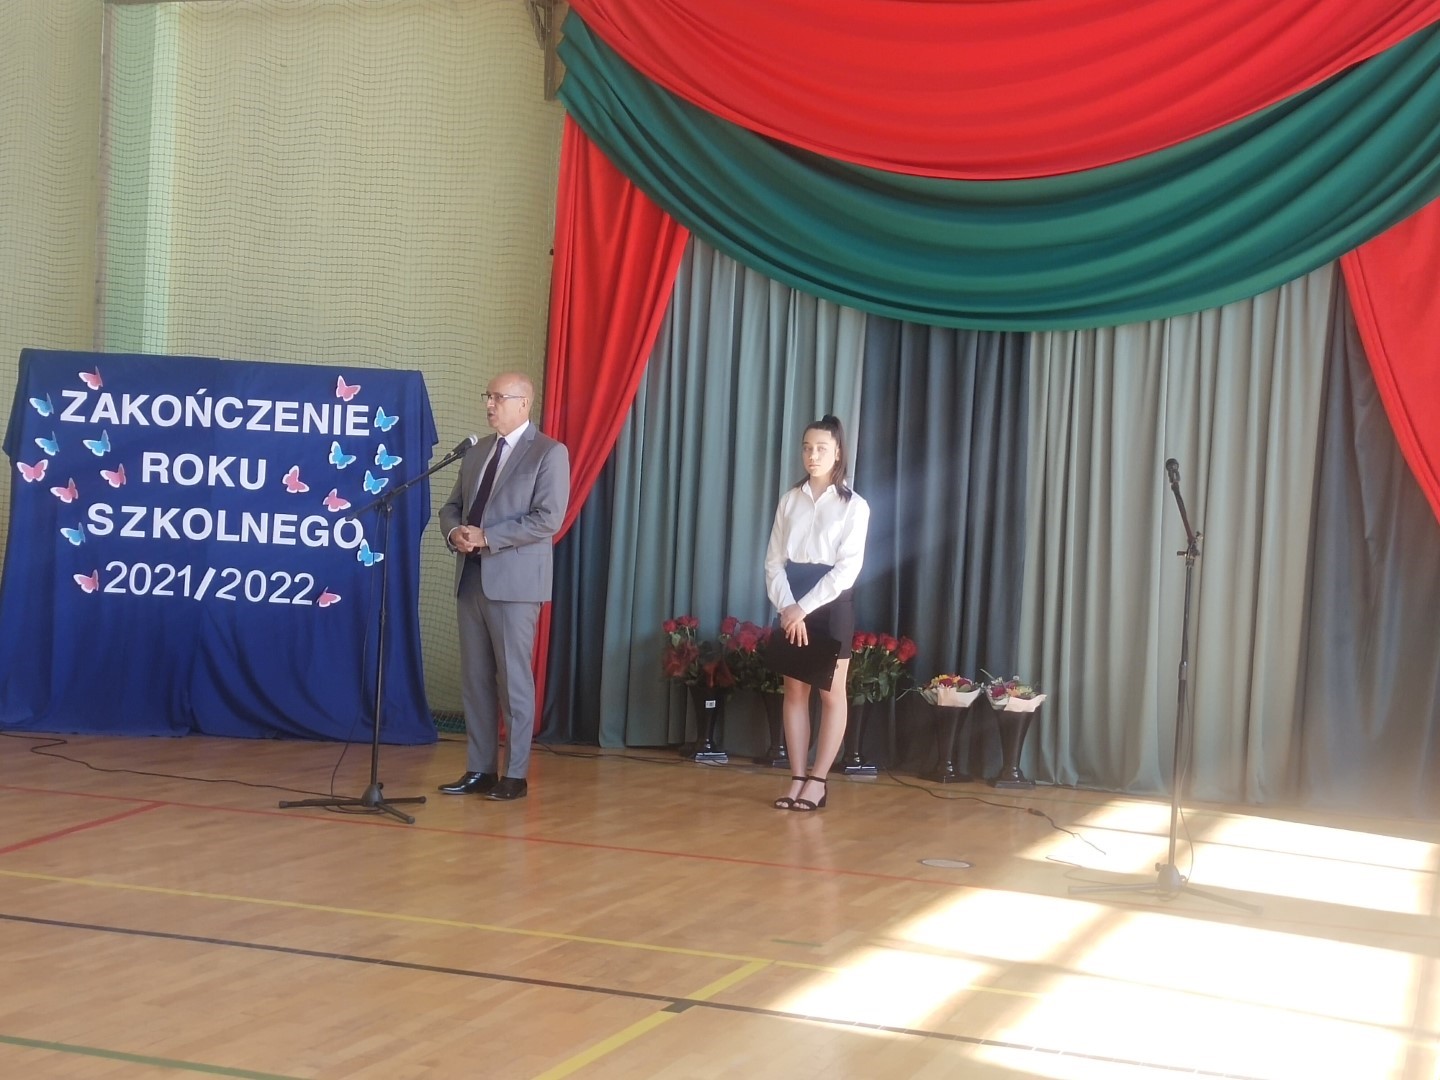 Zakończenie roku szkolnego 2021-2022 w gminie Rzgów.